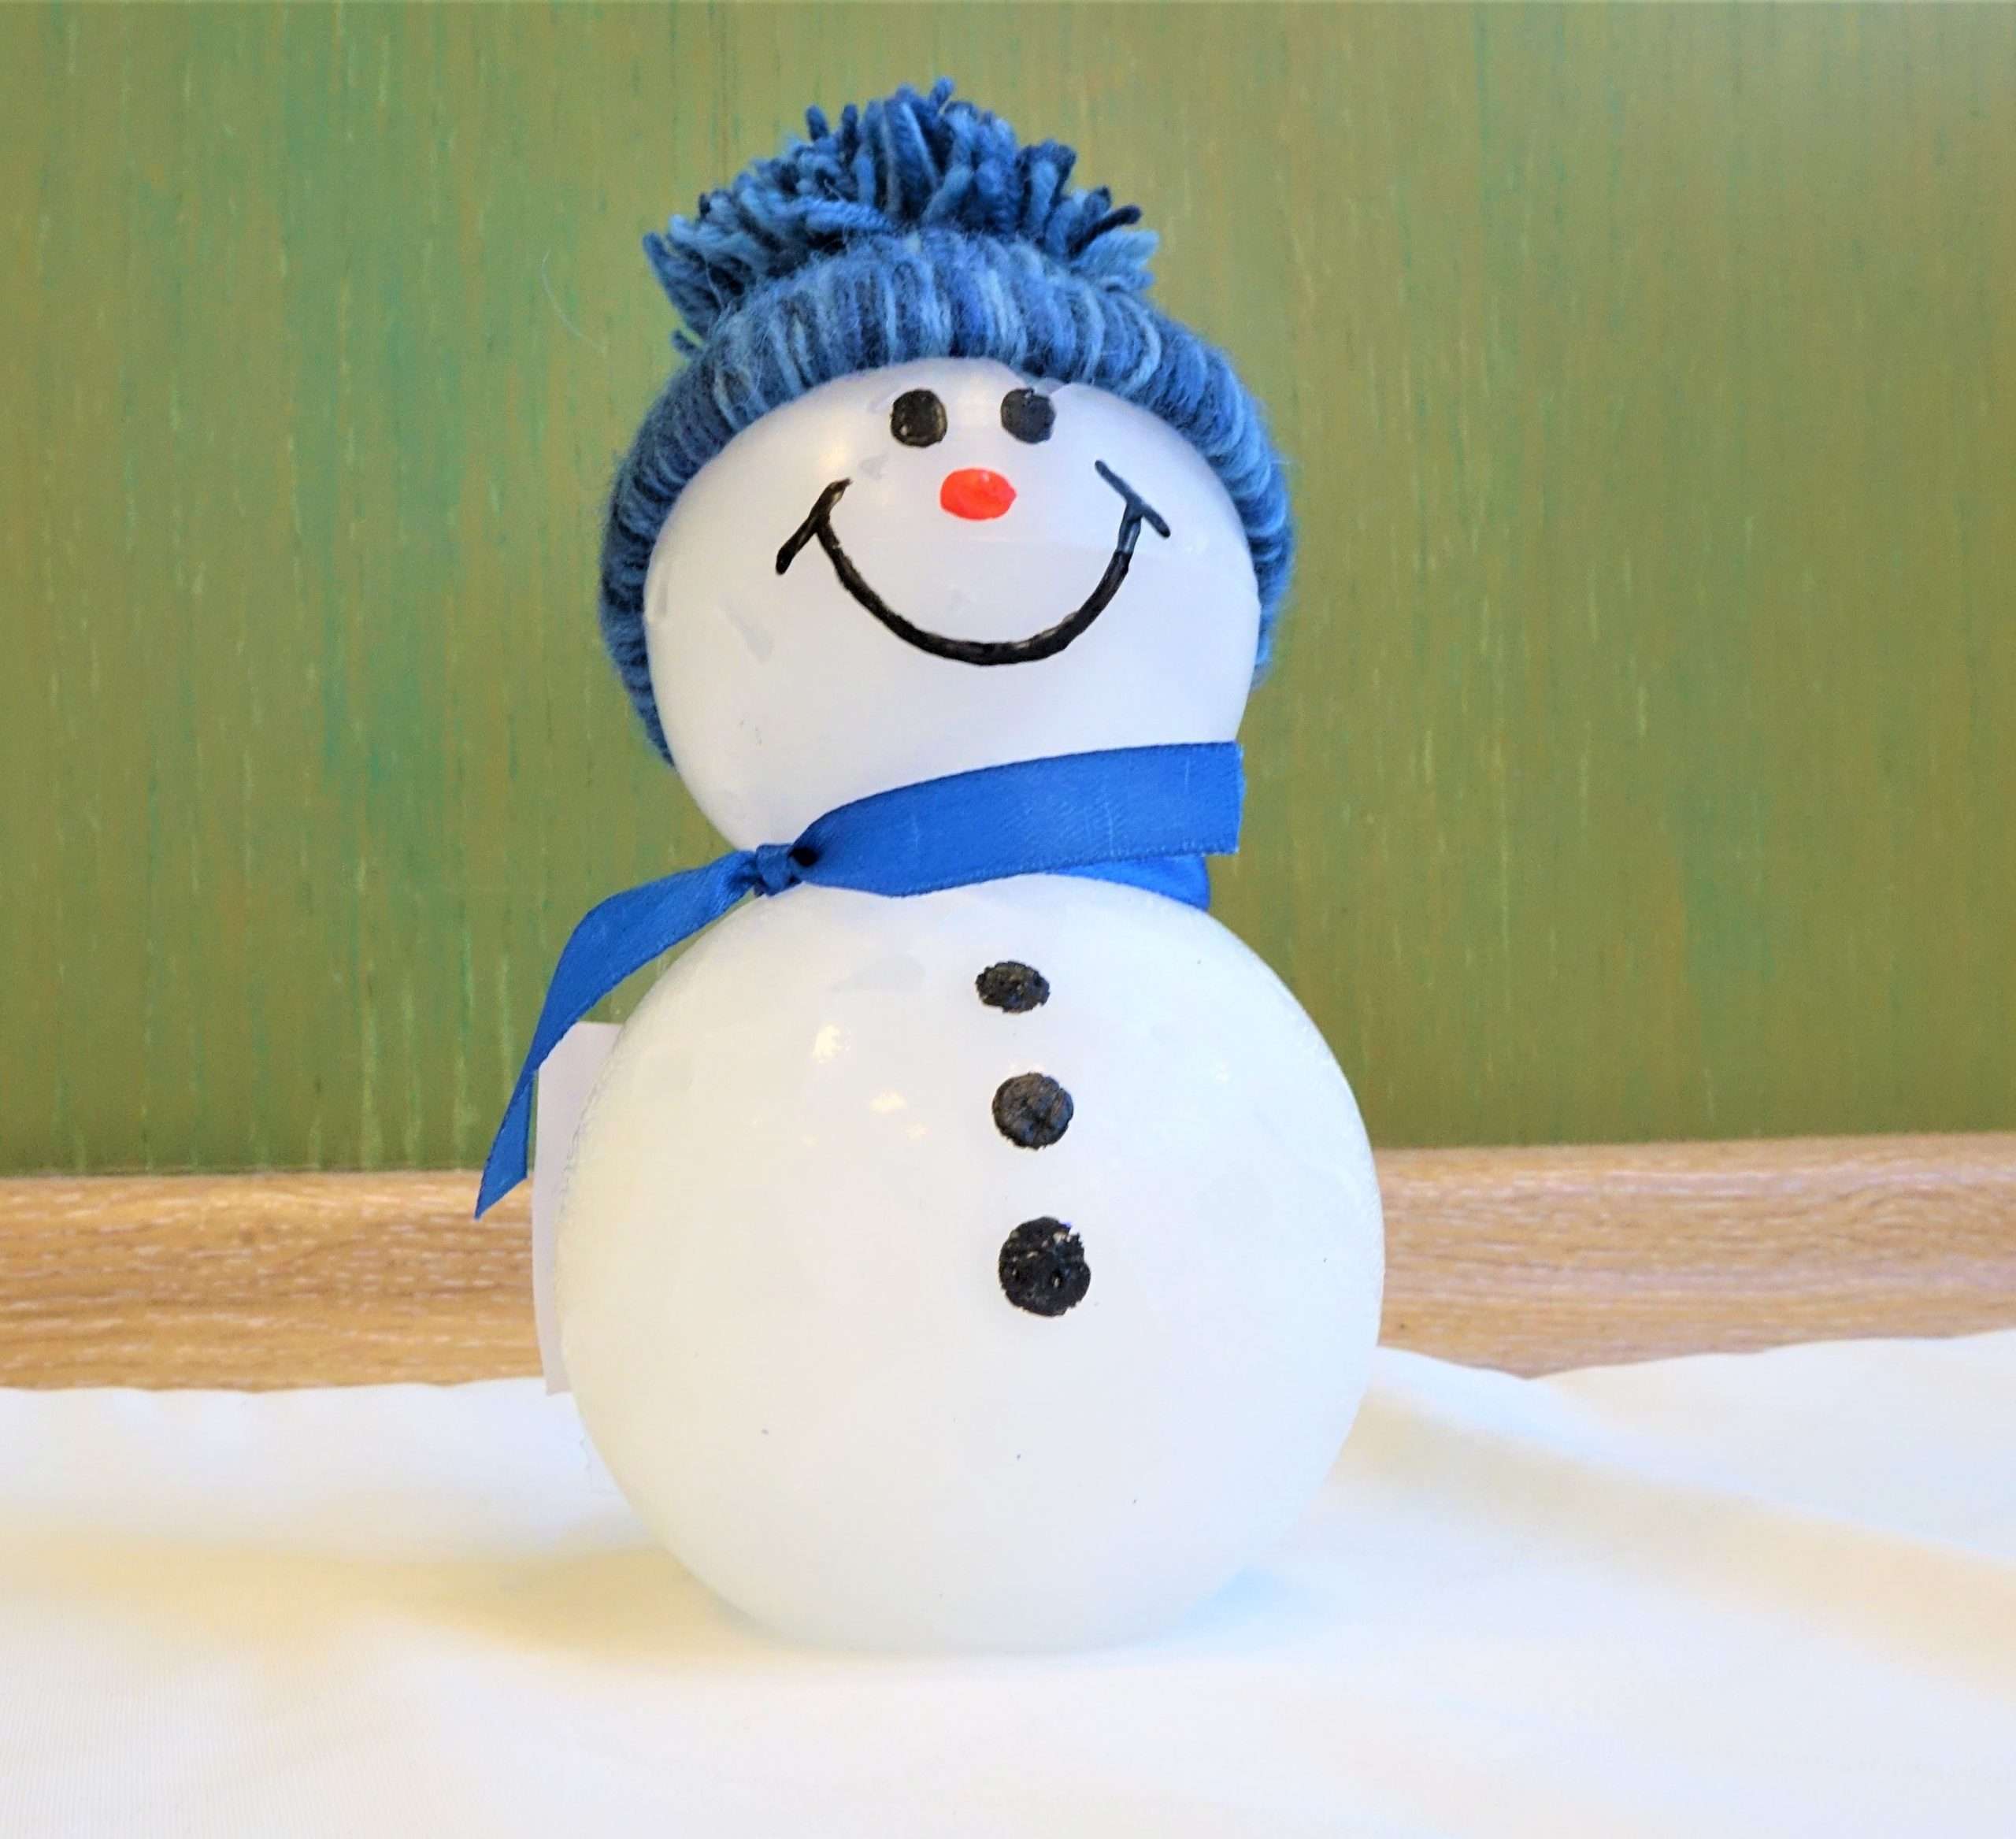 A képen egy körülbelül 15 centiméteres viaszból készült hóember látható. A hóember két szintből áll. Hasán 3 fekete gomb látható. Arca két szemből, egy narancssárga orrból és egy mosolygós szájból áll. Kék bolyhos fonott sapkát visel. Nyakában kék sál található szalagból.